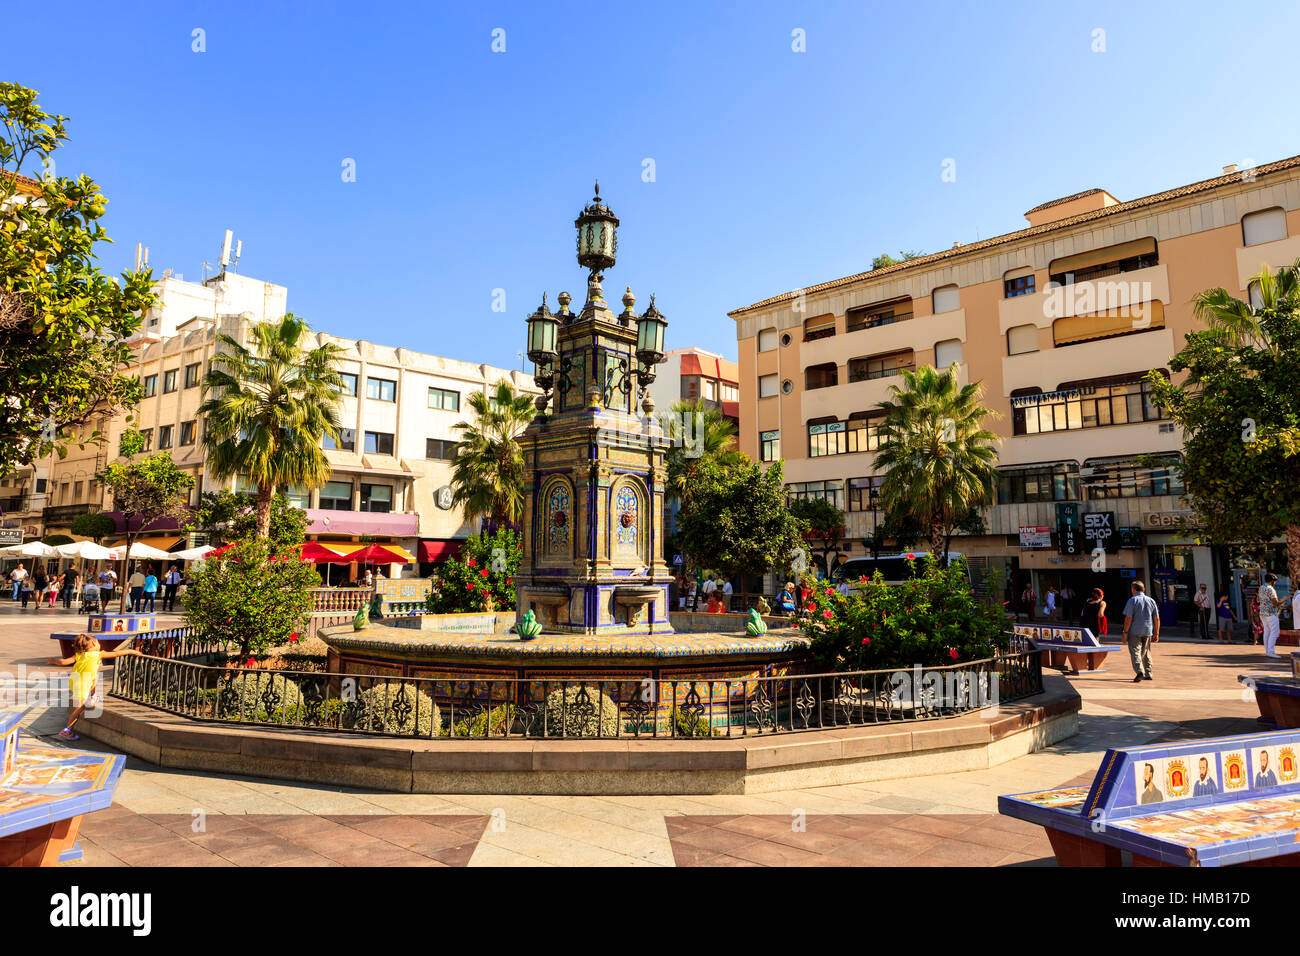 Historischen Plaza Alta (hohe Quadrat) in der Altstadt von Algeciras, Spanien. Es ist eines der wichtigsten Zentren der Aktivität in der Stadt. Stockfoto